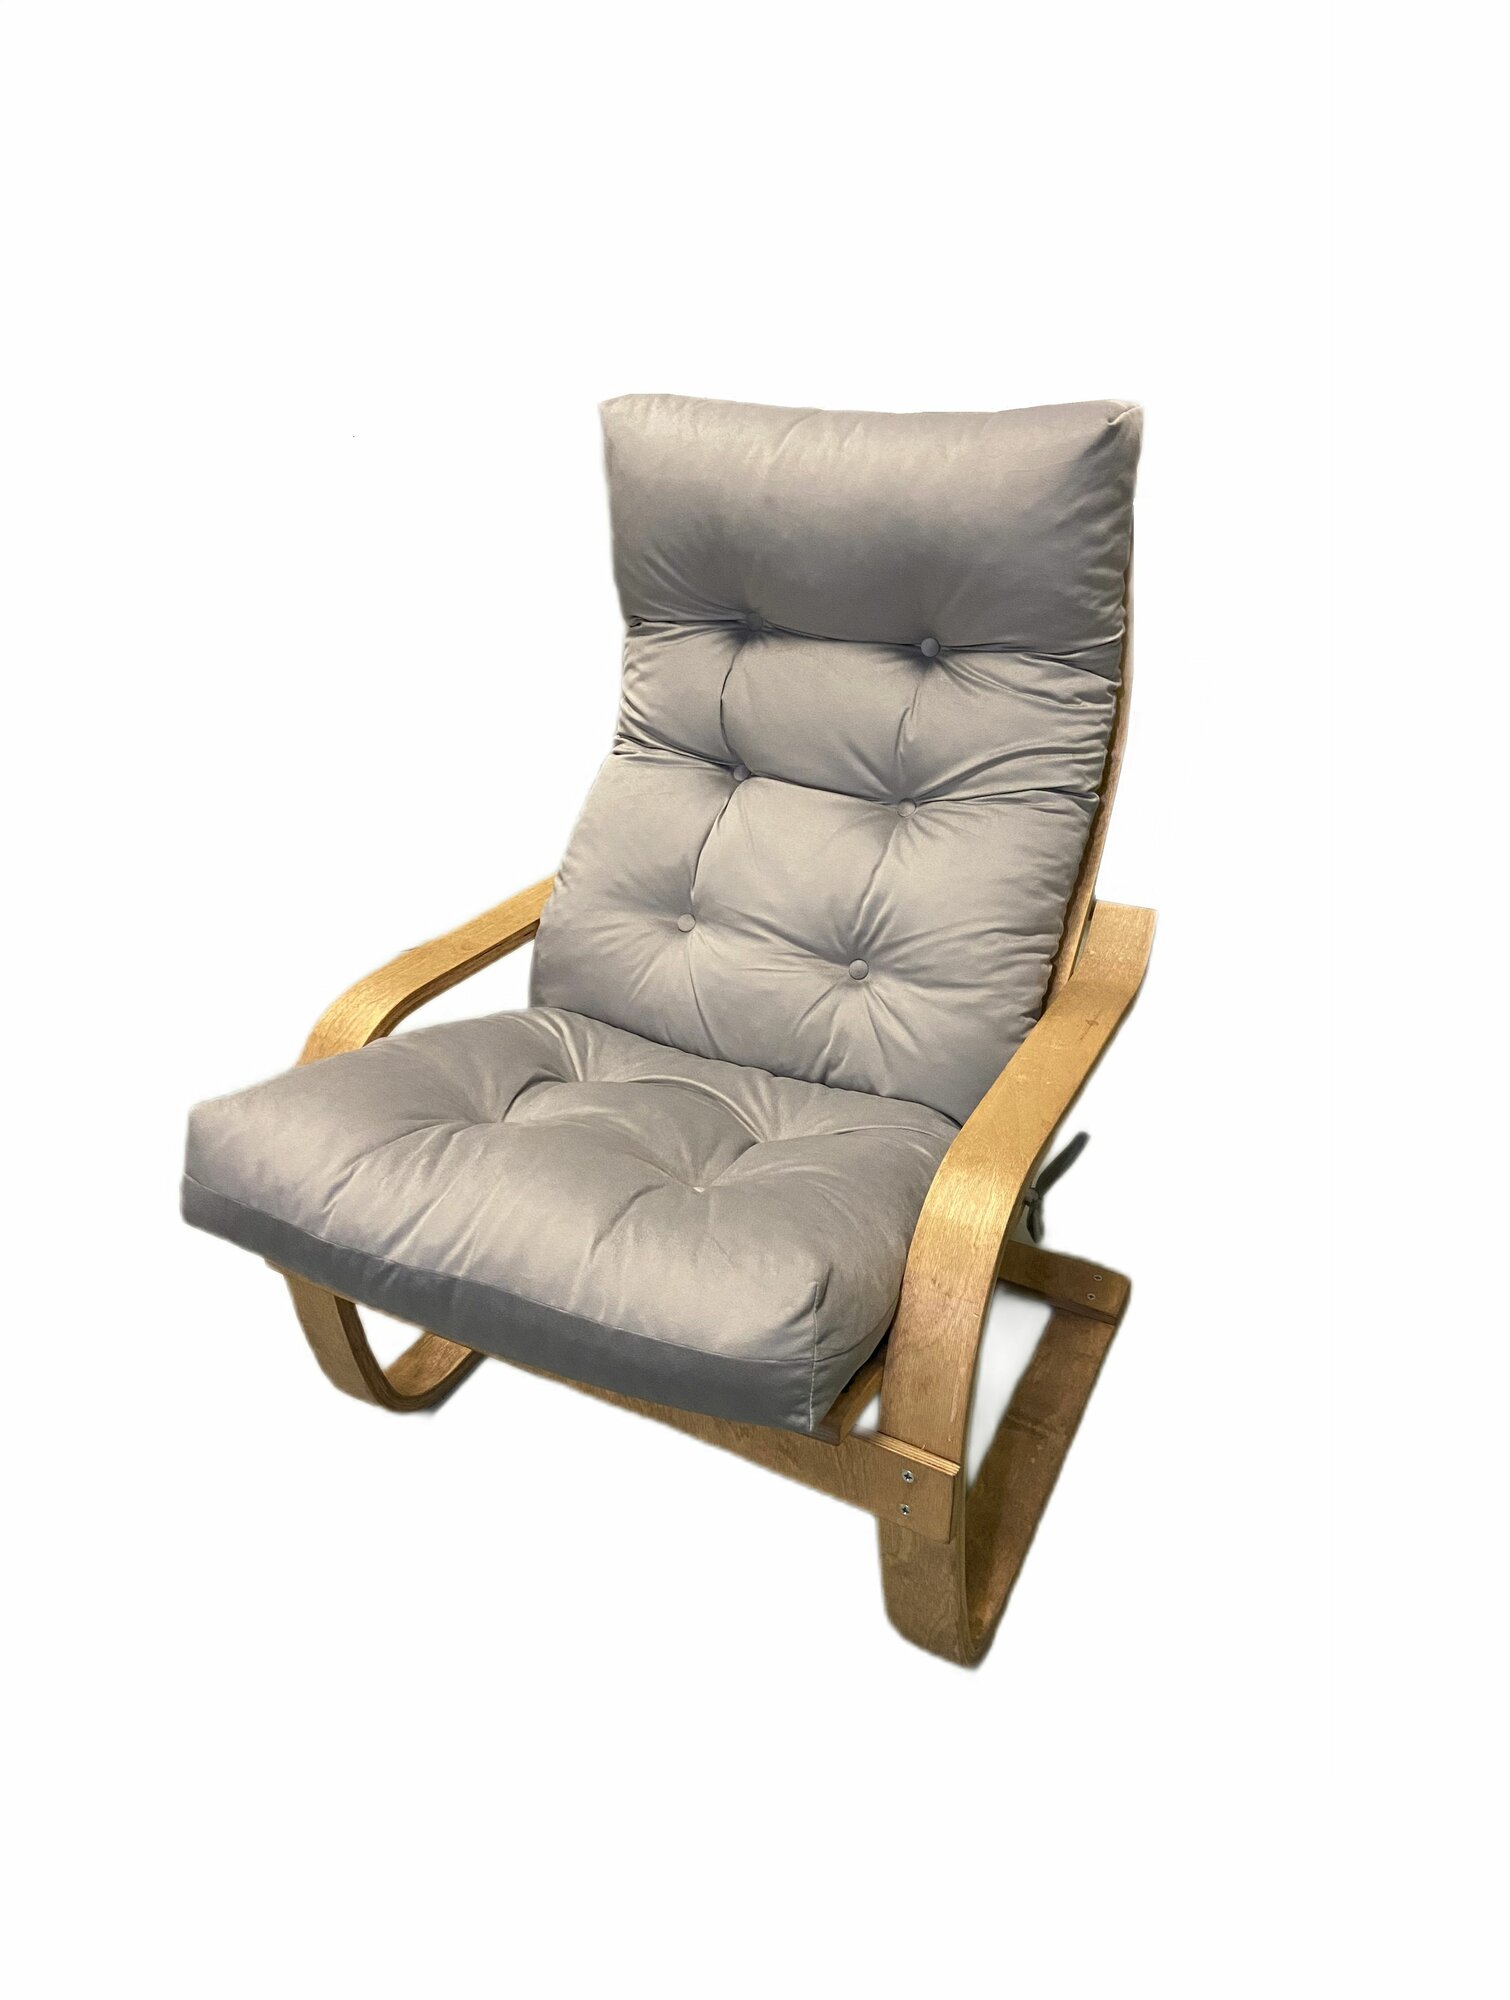 Подушка чехол на кресло Поэнг, модель для Поэнг Икеа